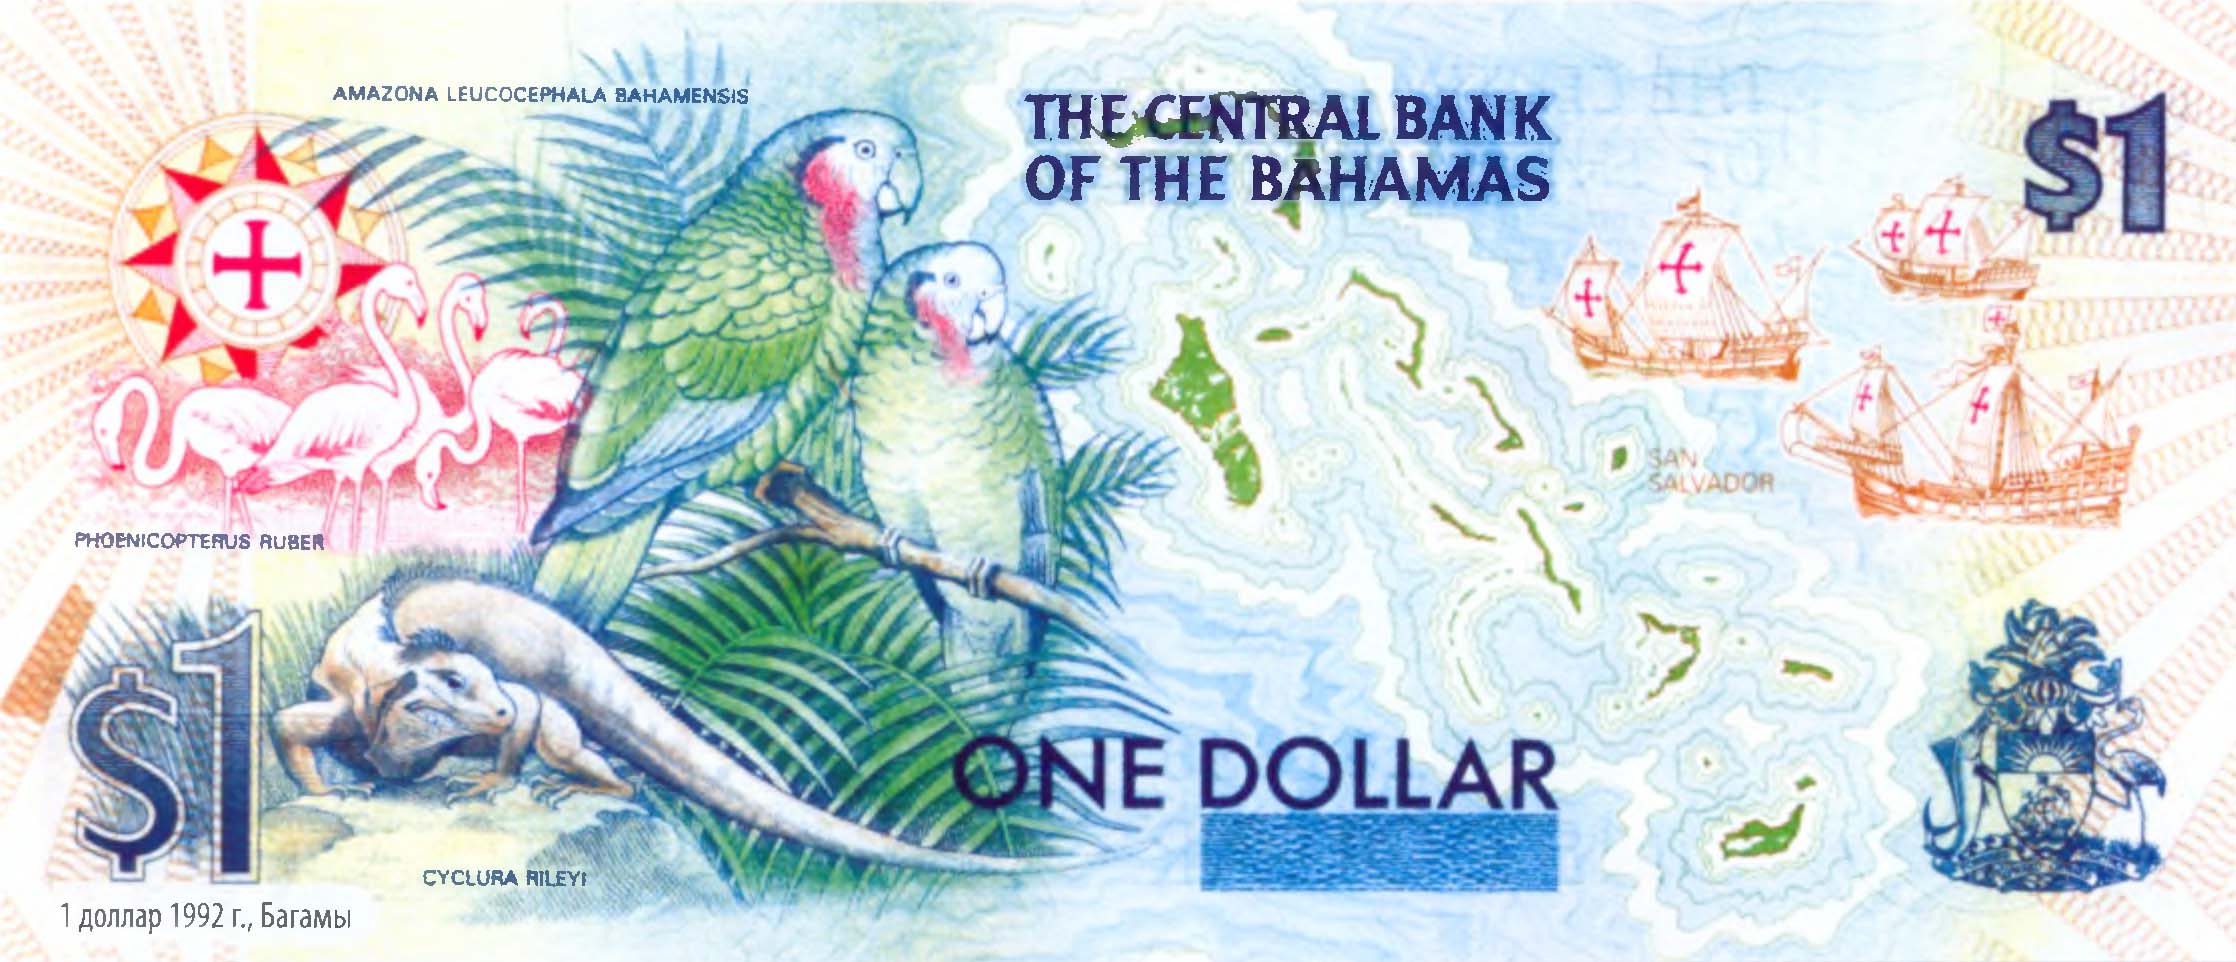 1 доллар 1992 г., Багамы.